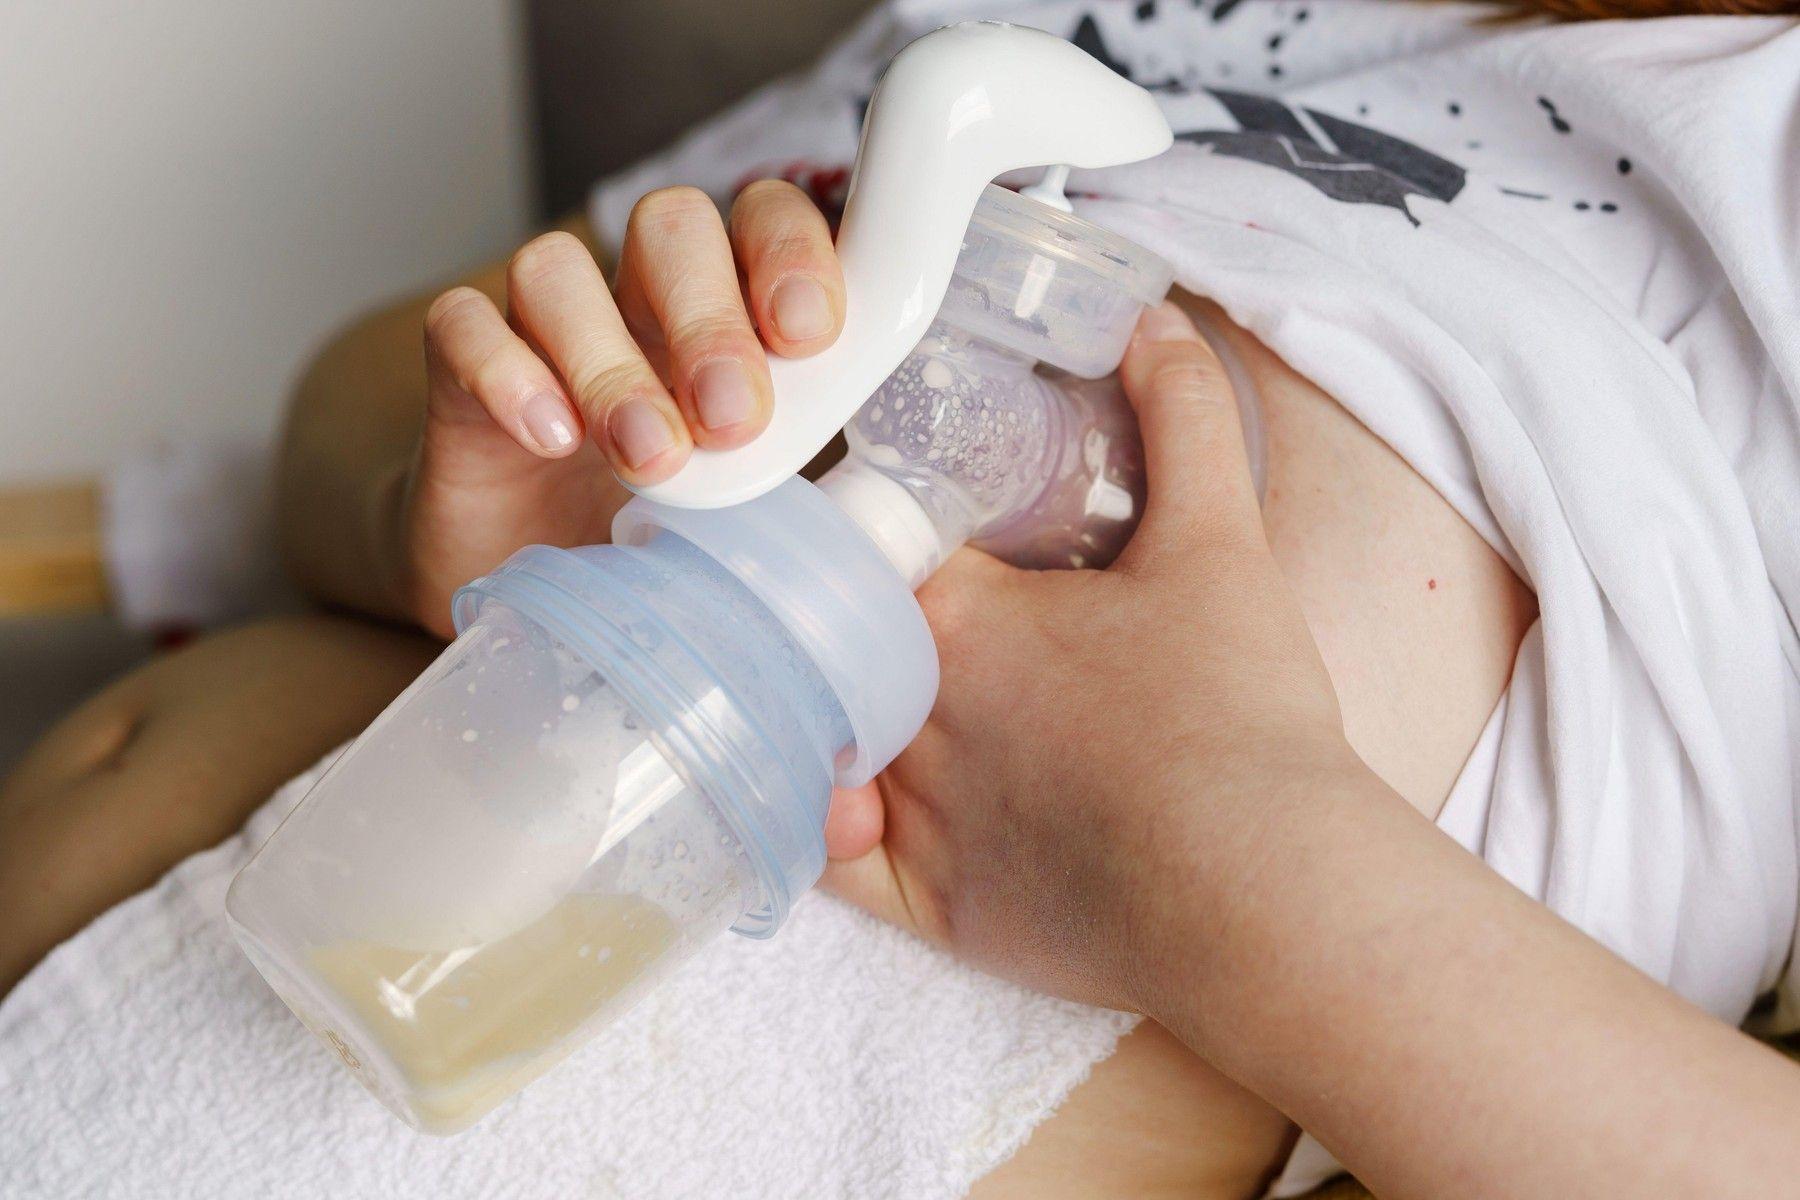 Dojčenie a odsávanie: Aká je kvalita odsávaného mlieka? | Najmama.sk